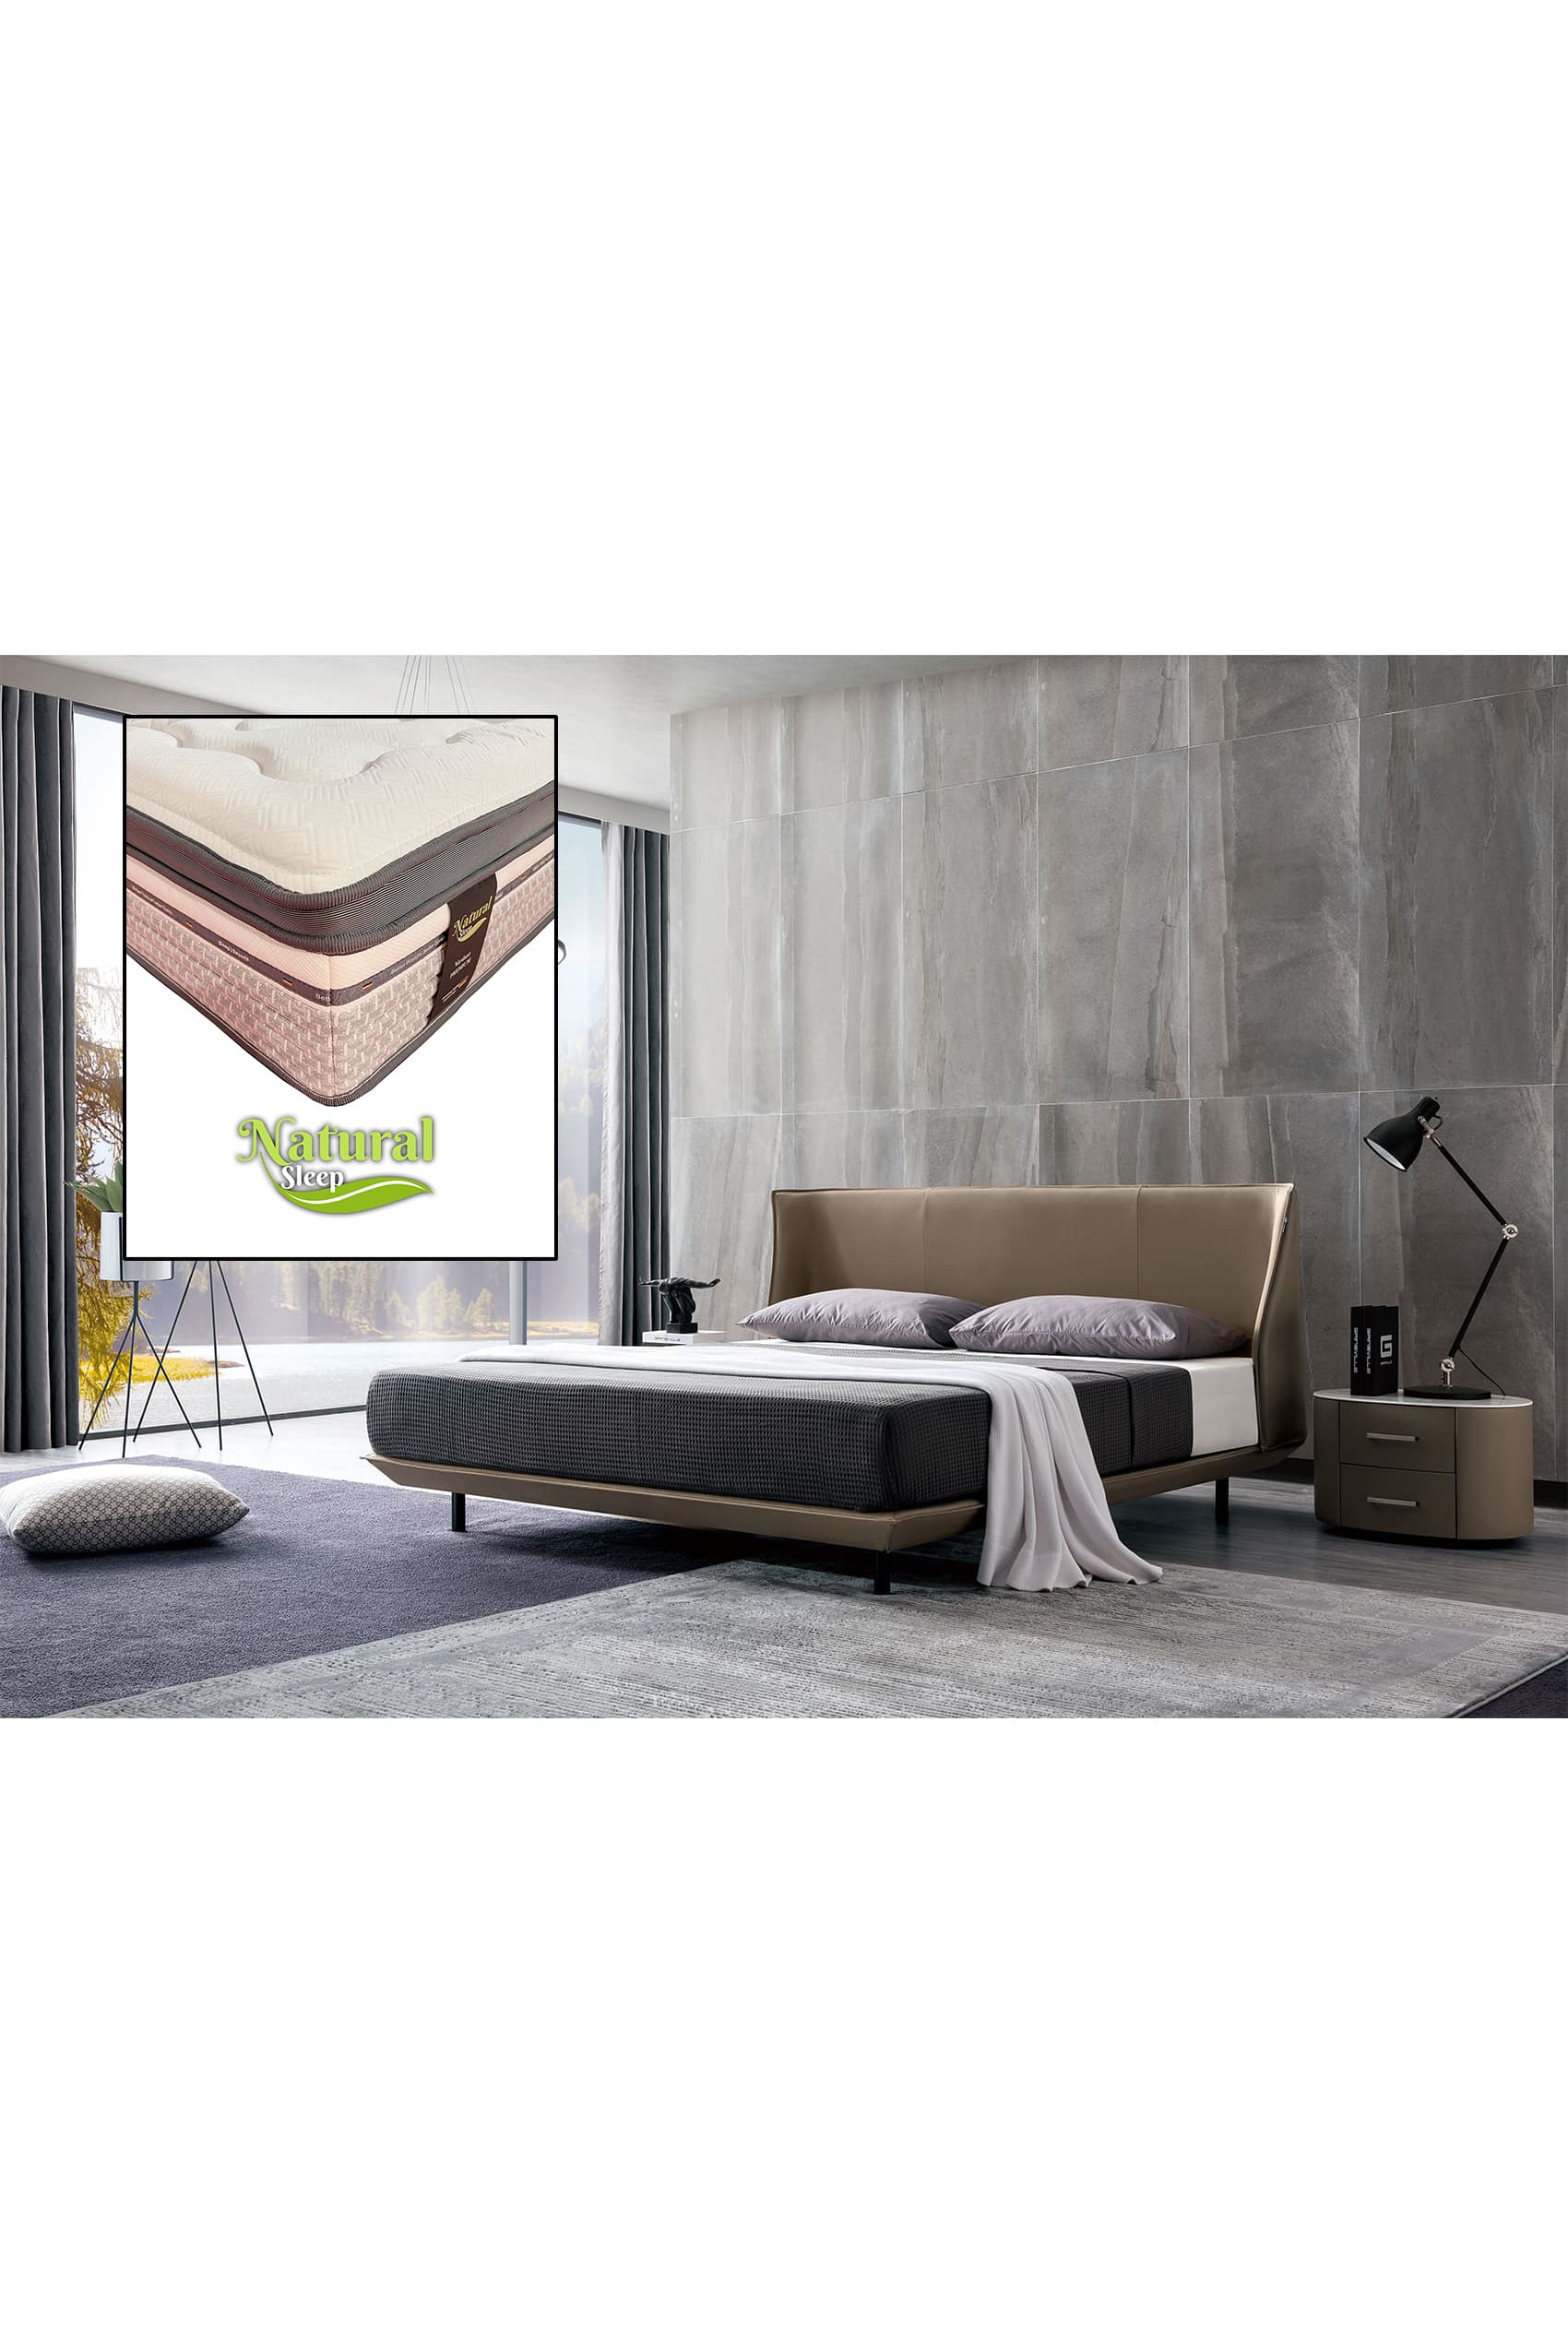 Zolano Designer Bed Frame + Natural Sleep Verdant